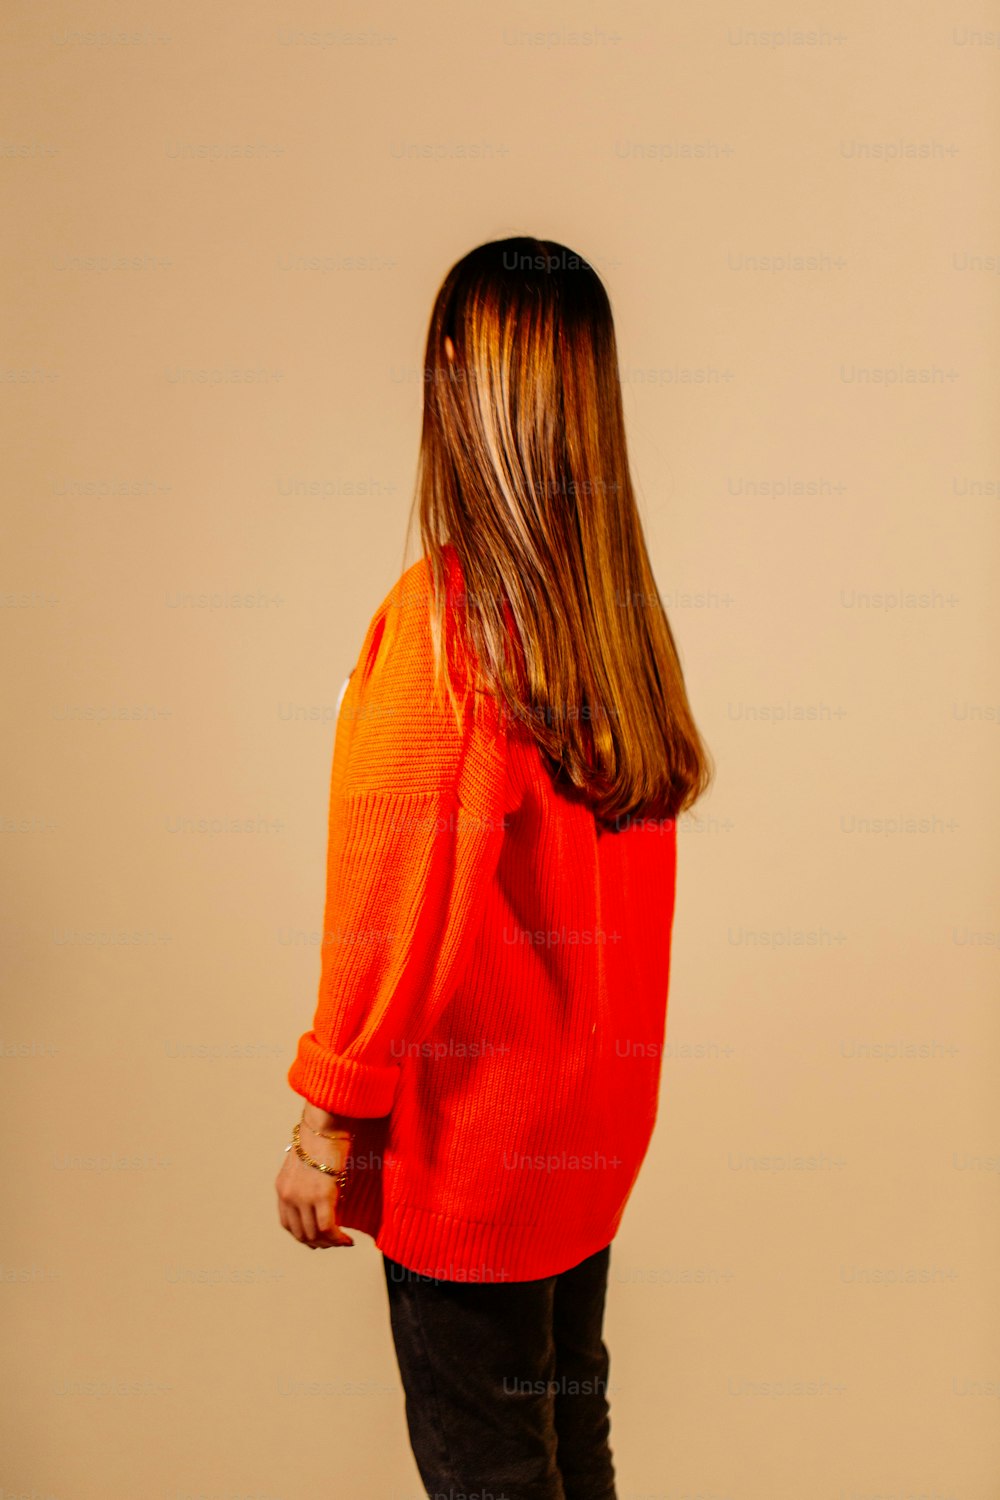 オレンジ色のセーターを着た女性が立っている